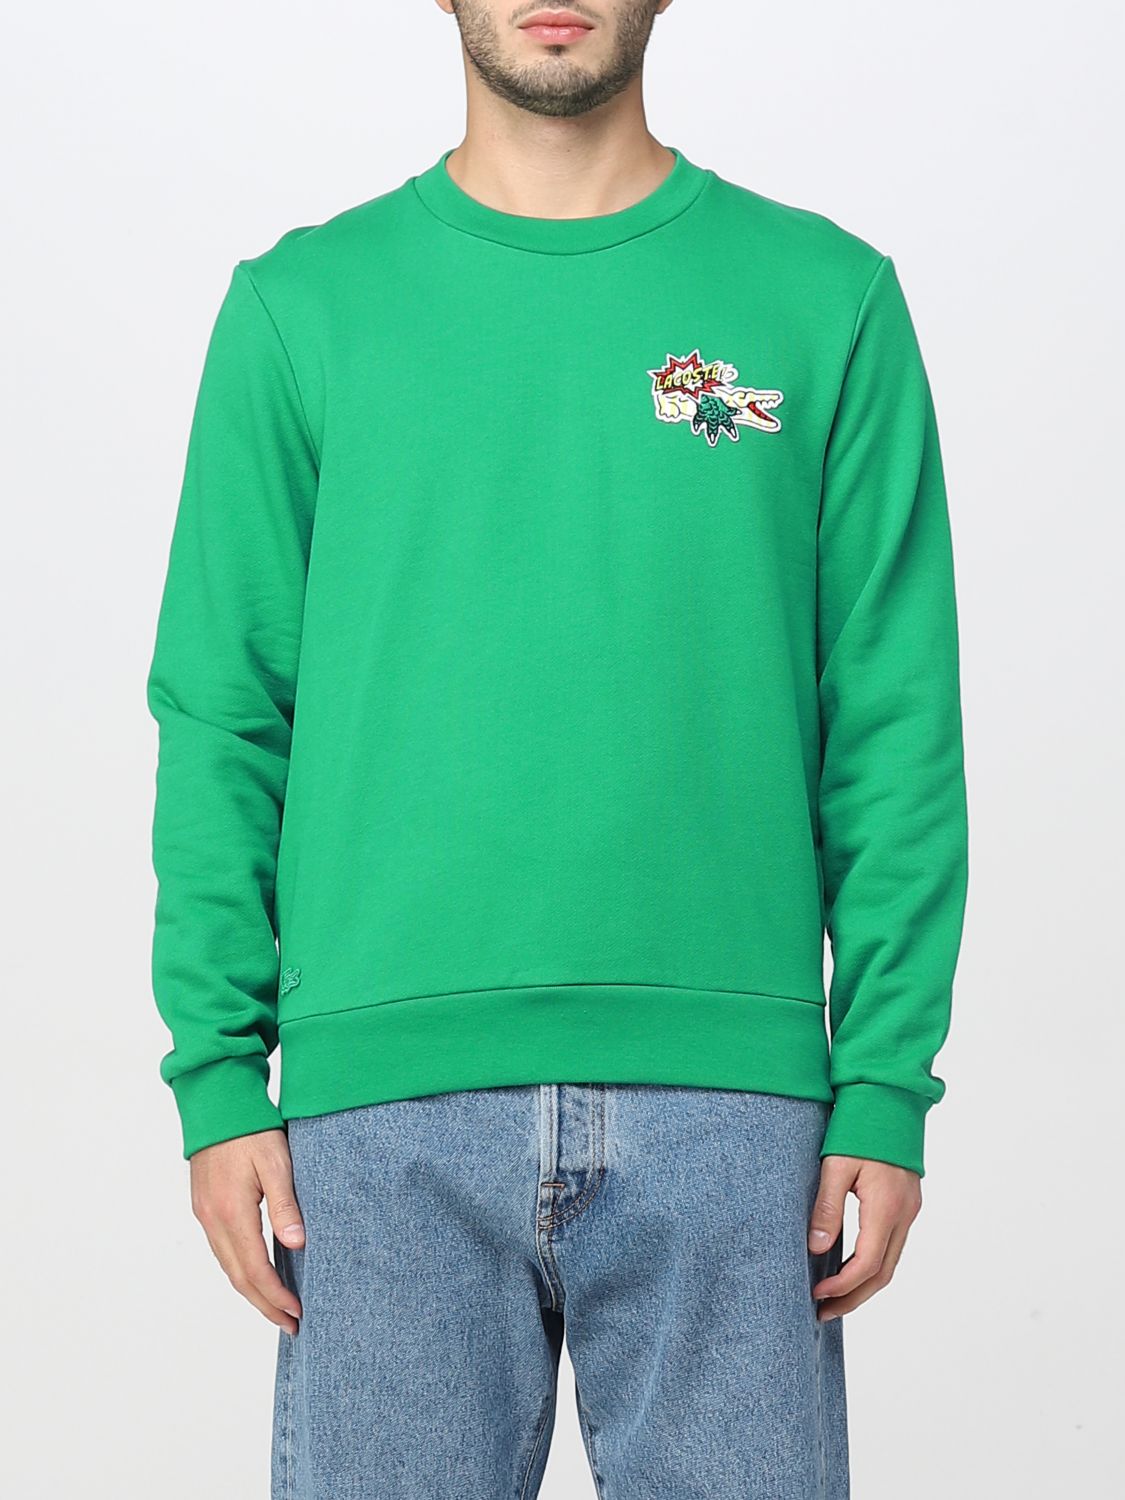 LACOSTE: sweatshirt for man - Green | Lacoste sweatshirt SH1359 online ...